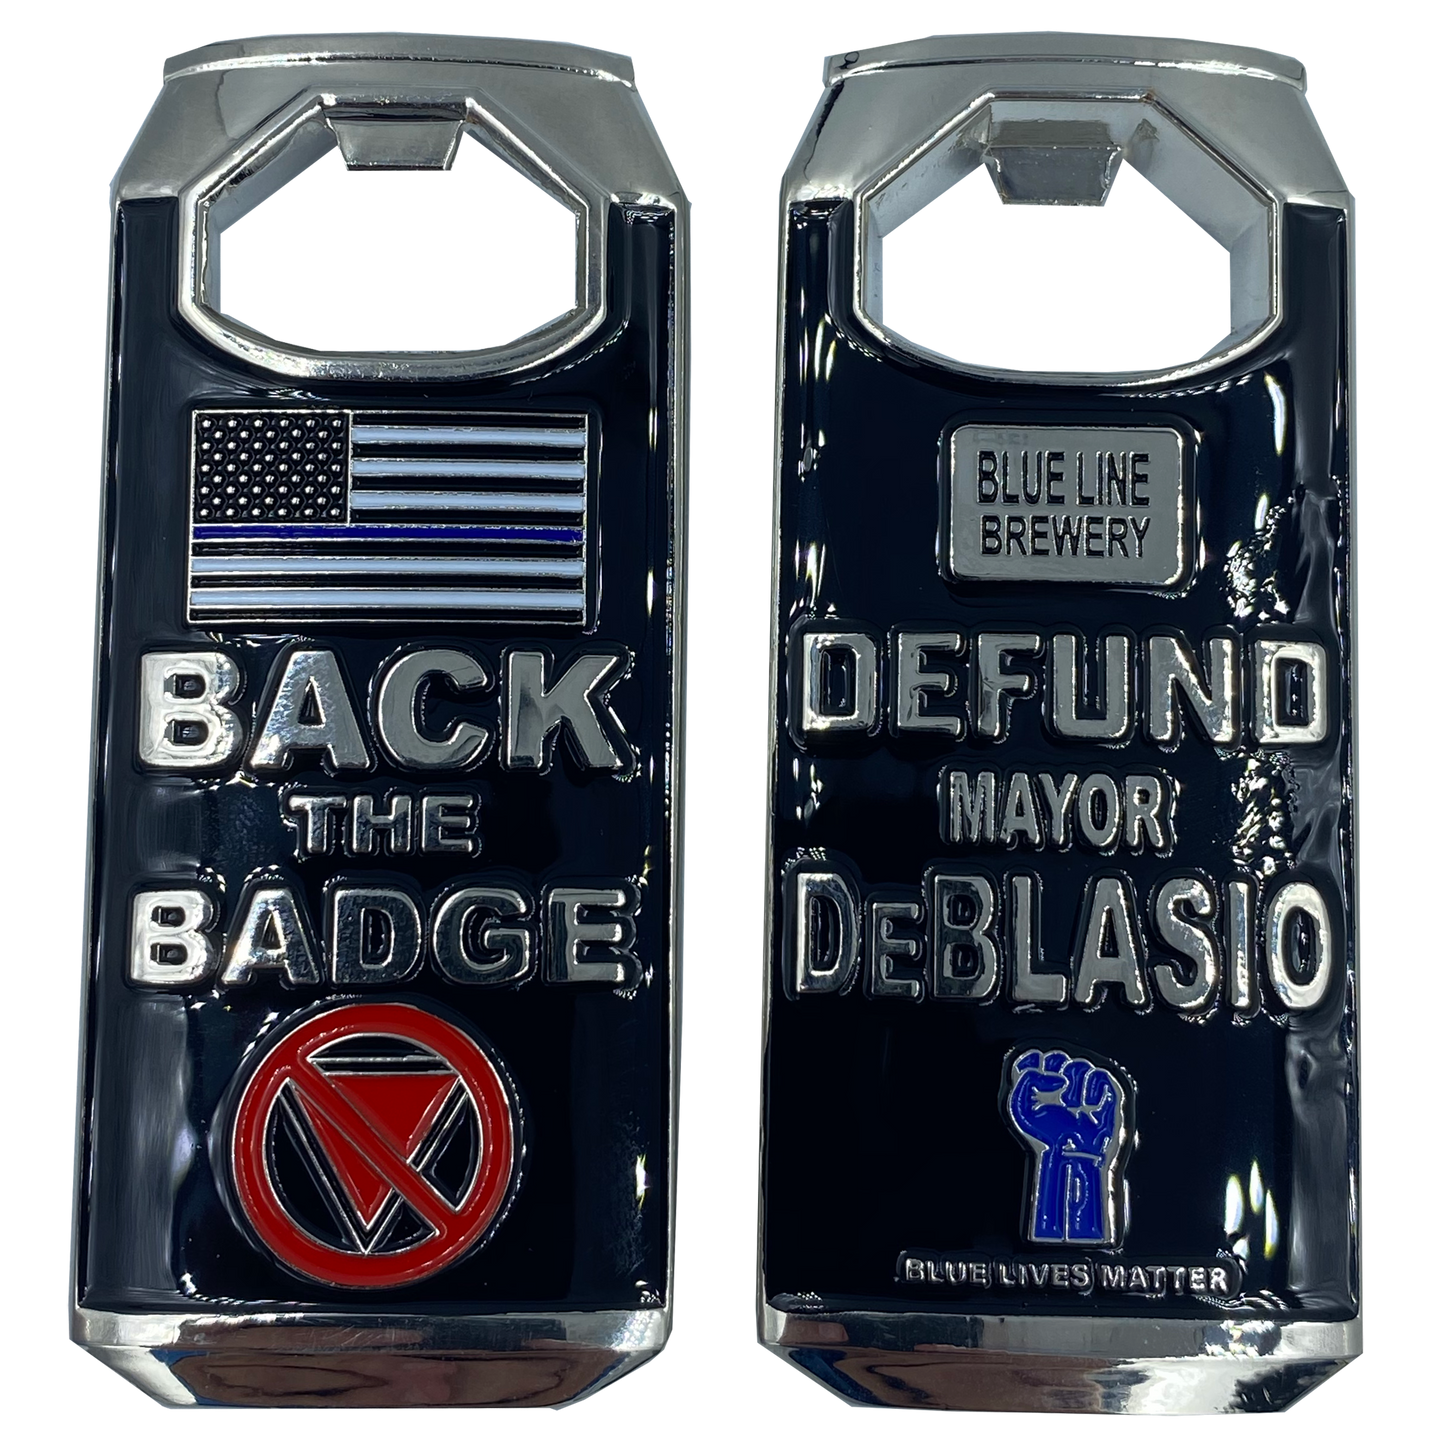 DL2-13 Defund DeBlasio Thin Blue Line Brewery Bottle Opener Police Challenge Coin NYPD